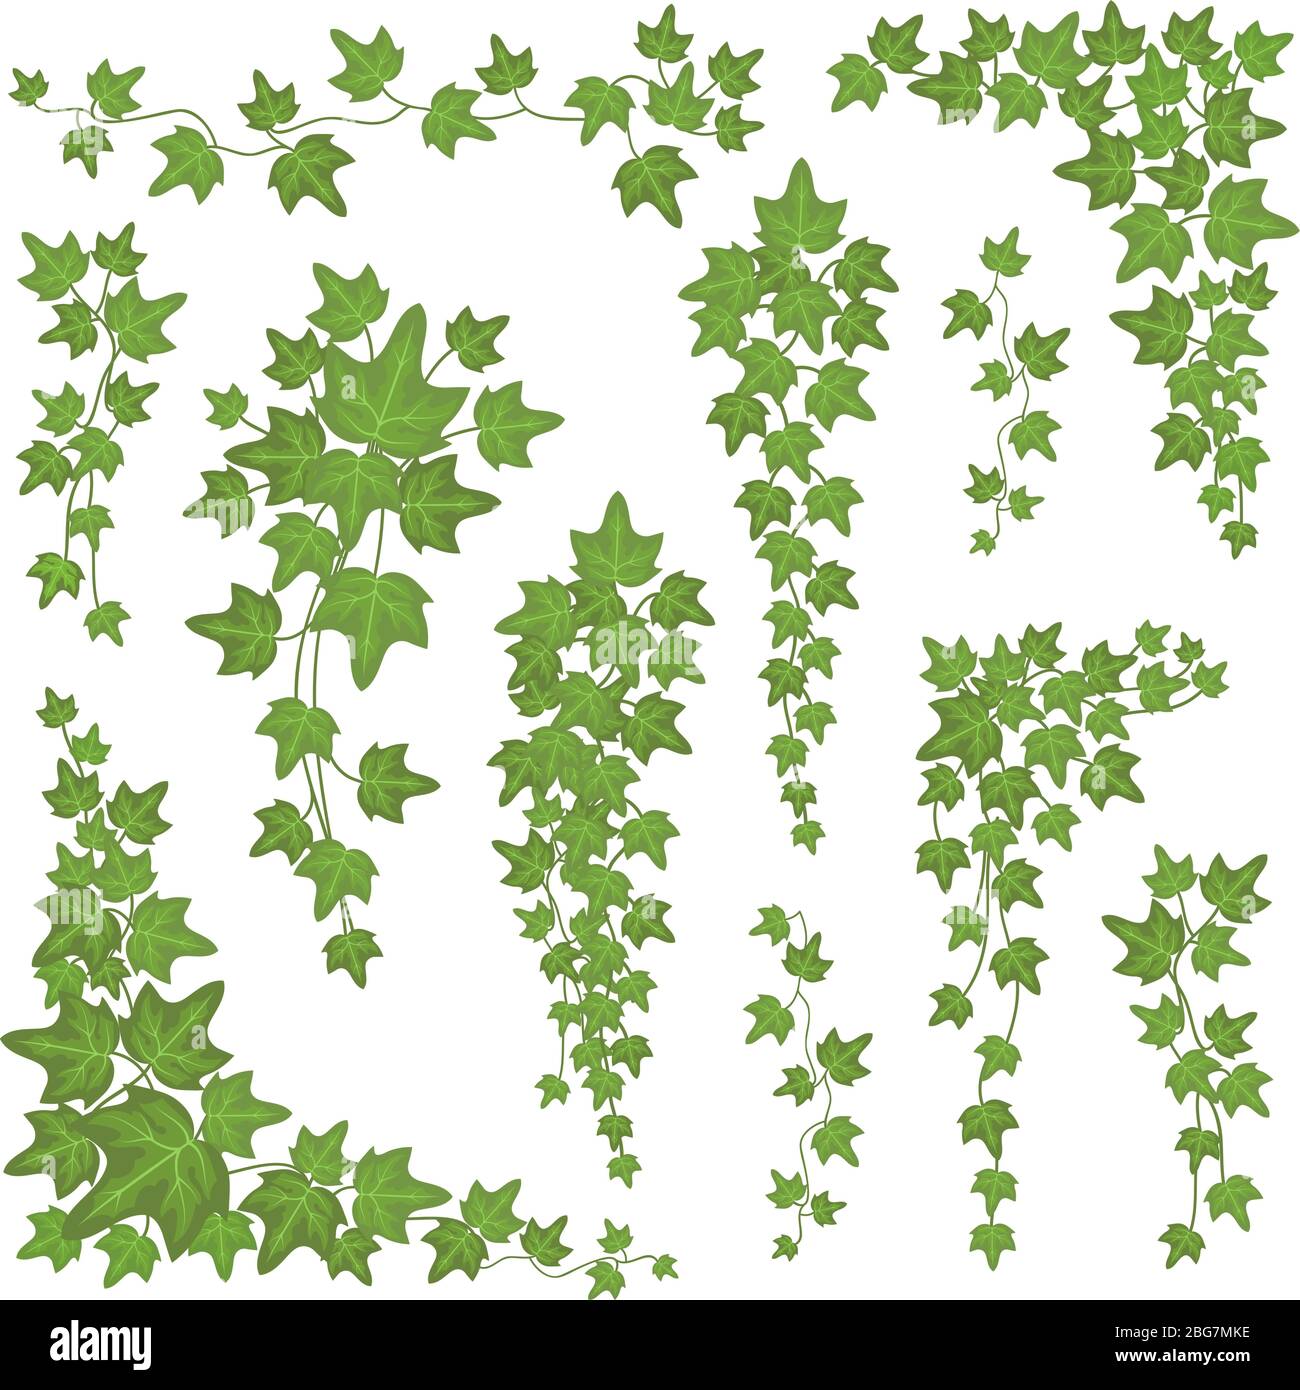 Efeu grüne Blätter an hängenden Ästen. Wand klettern Dekoration Pflanze Vektor-Set isoliert auf weißem Hintergrund. Pflanze Blatt Natur für Dekoration, Laub natürlichen wachsenden Illustration Stock Vektor